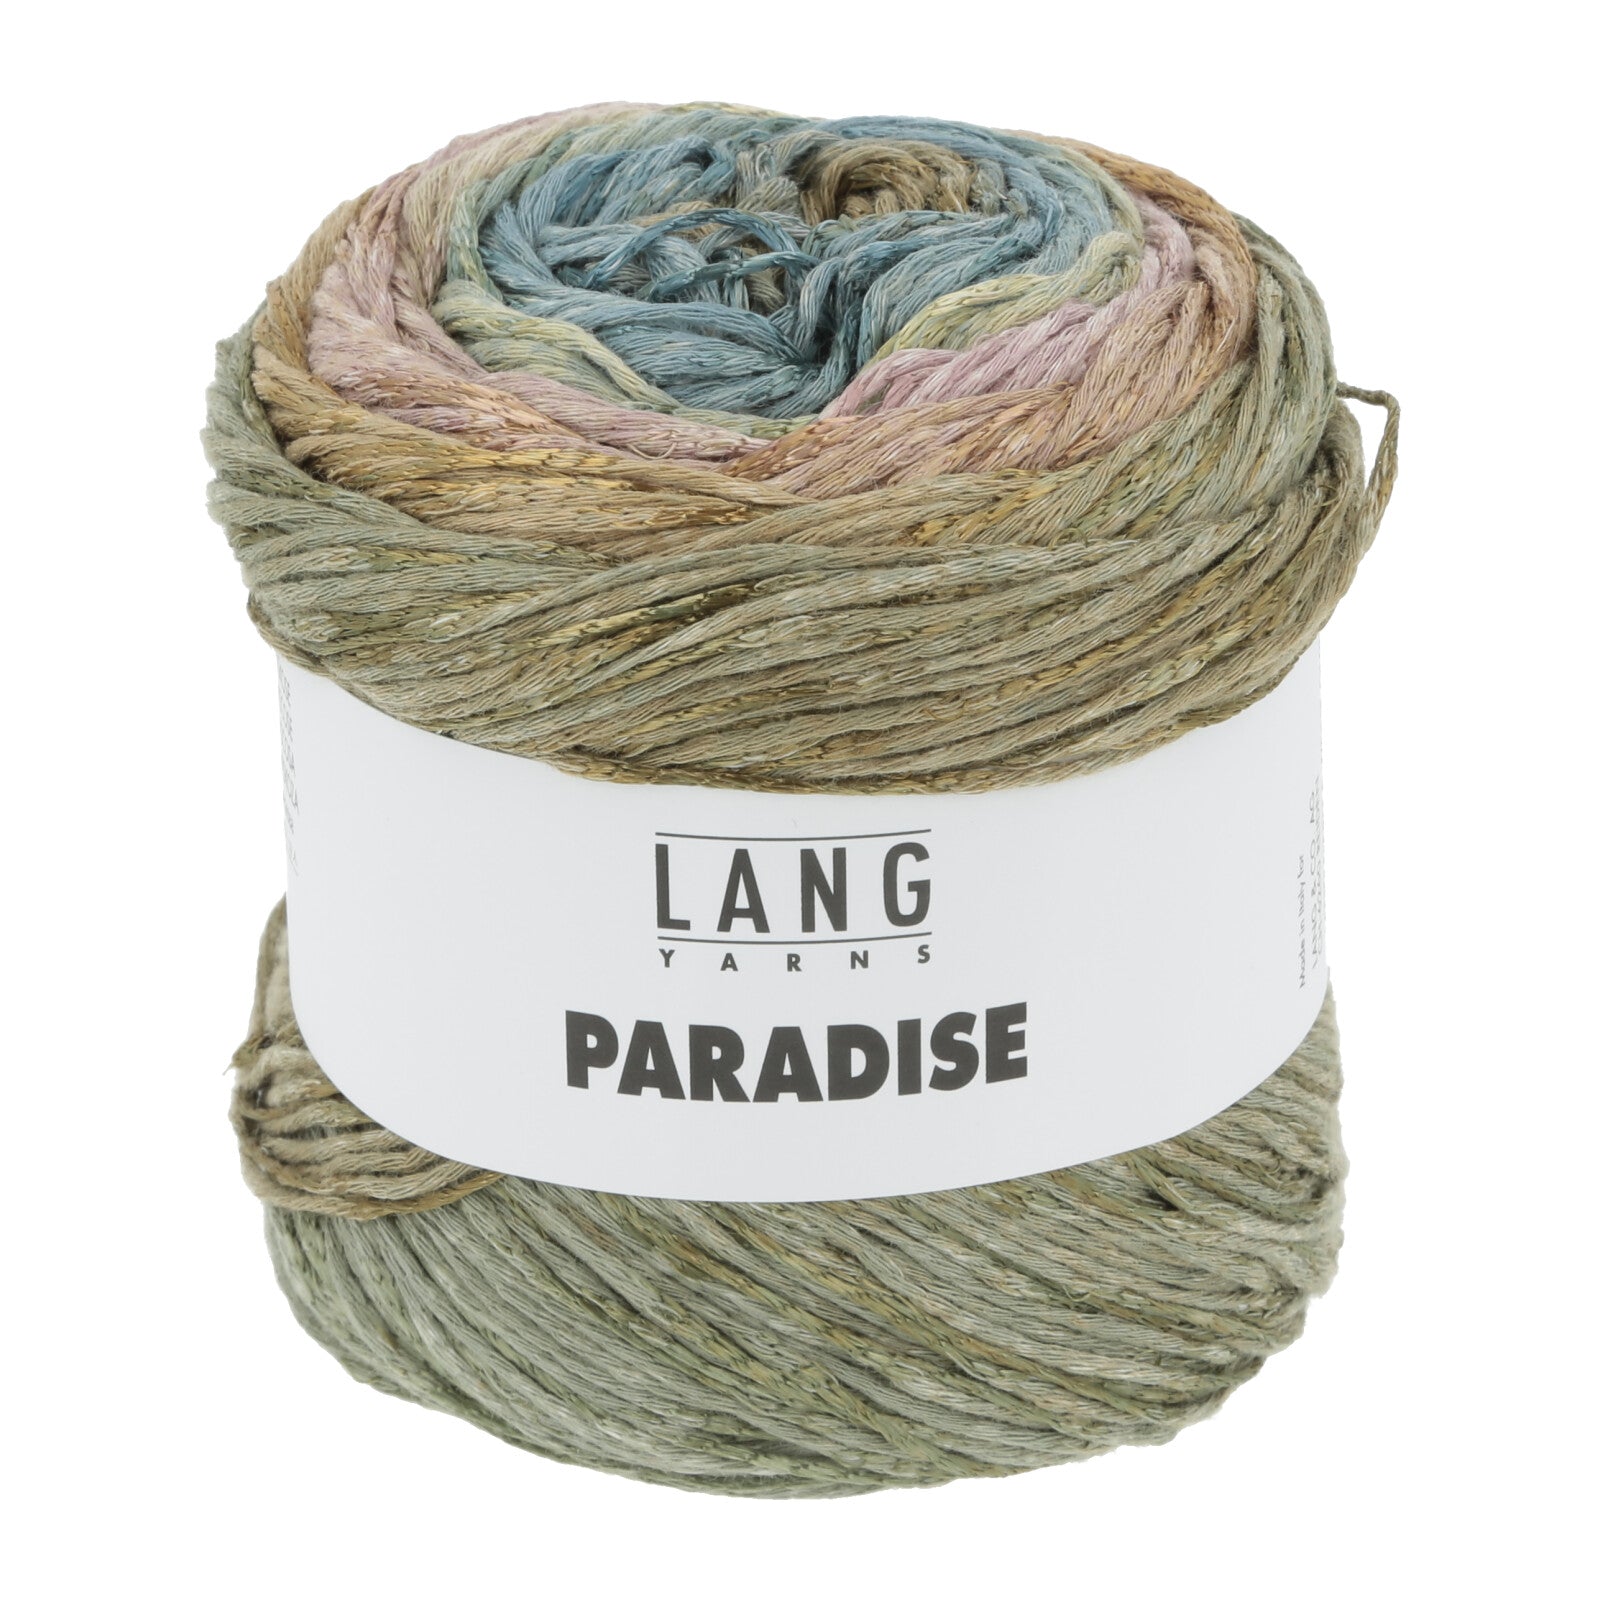 Lang Yarns Paradise yarn color 39